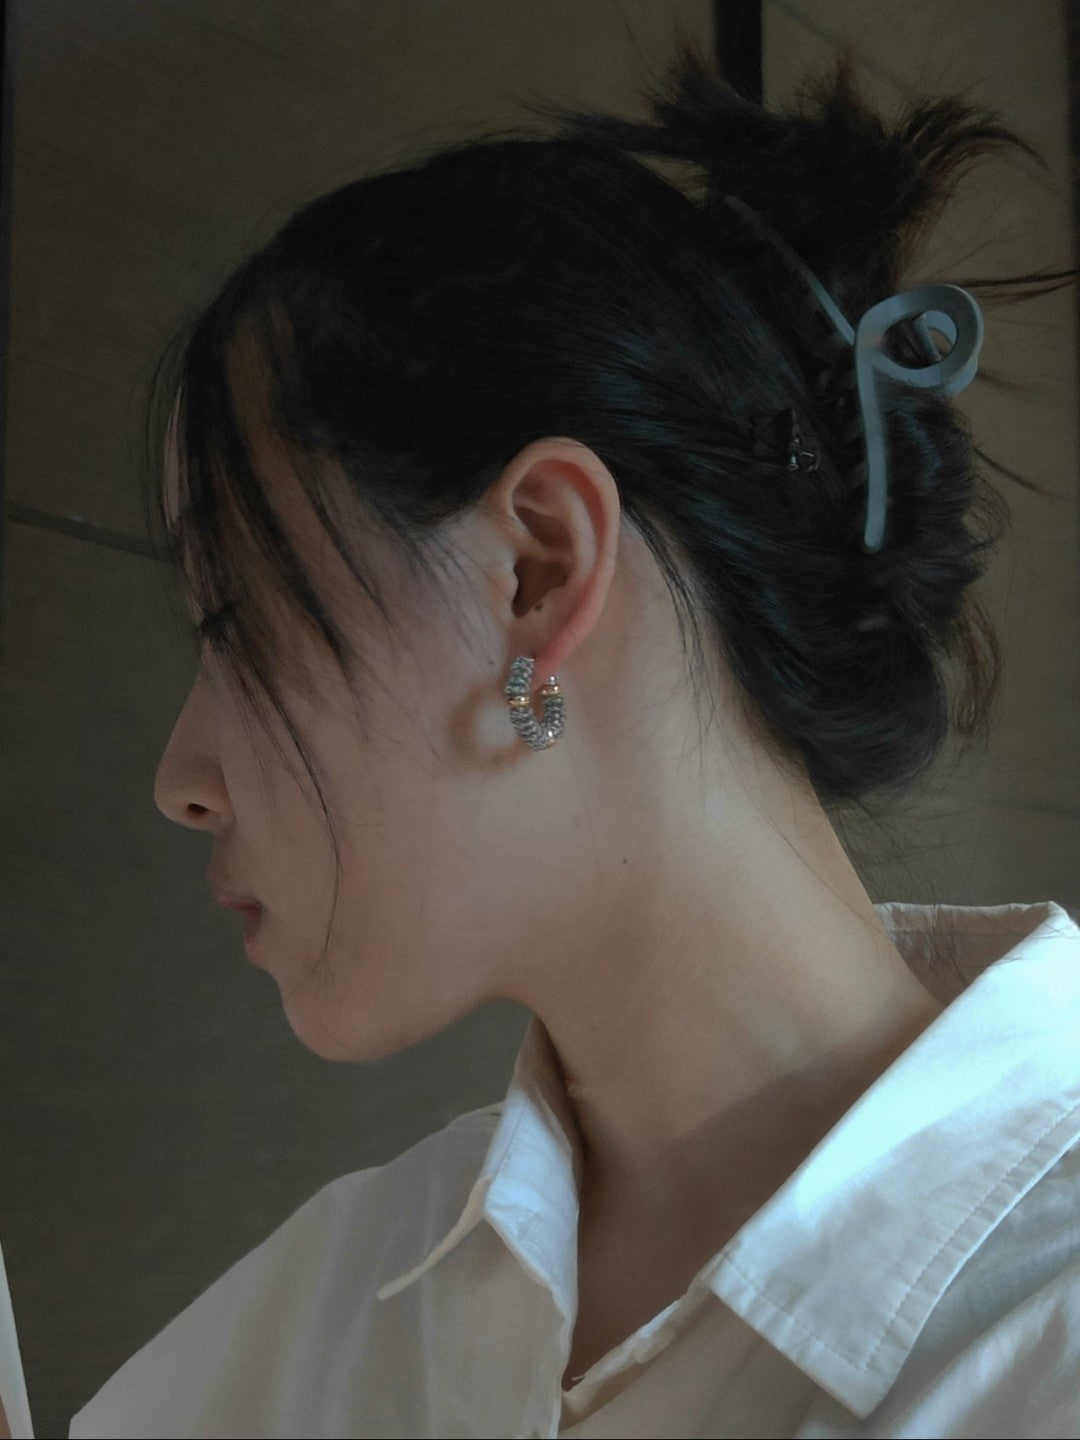 MIYUKI Seed Beaded Hoop Earrings